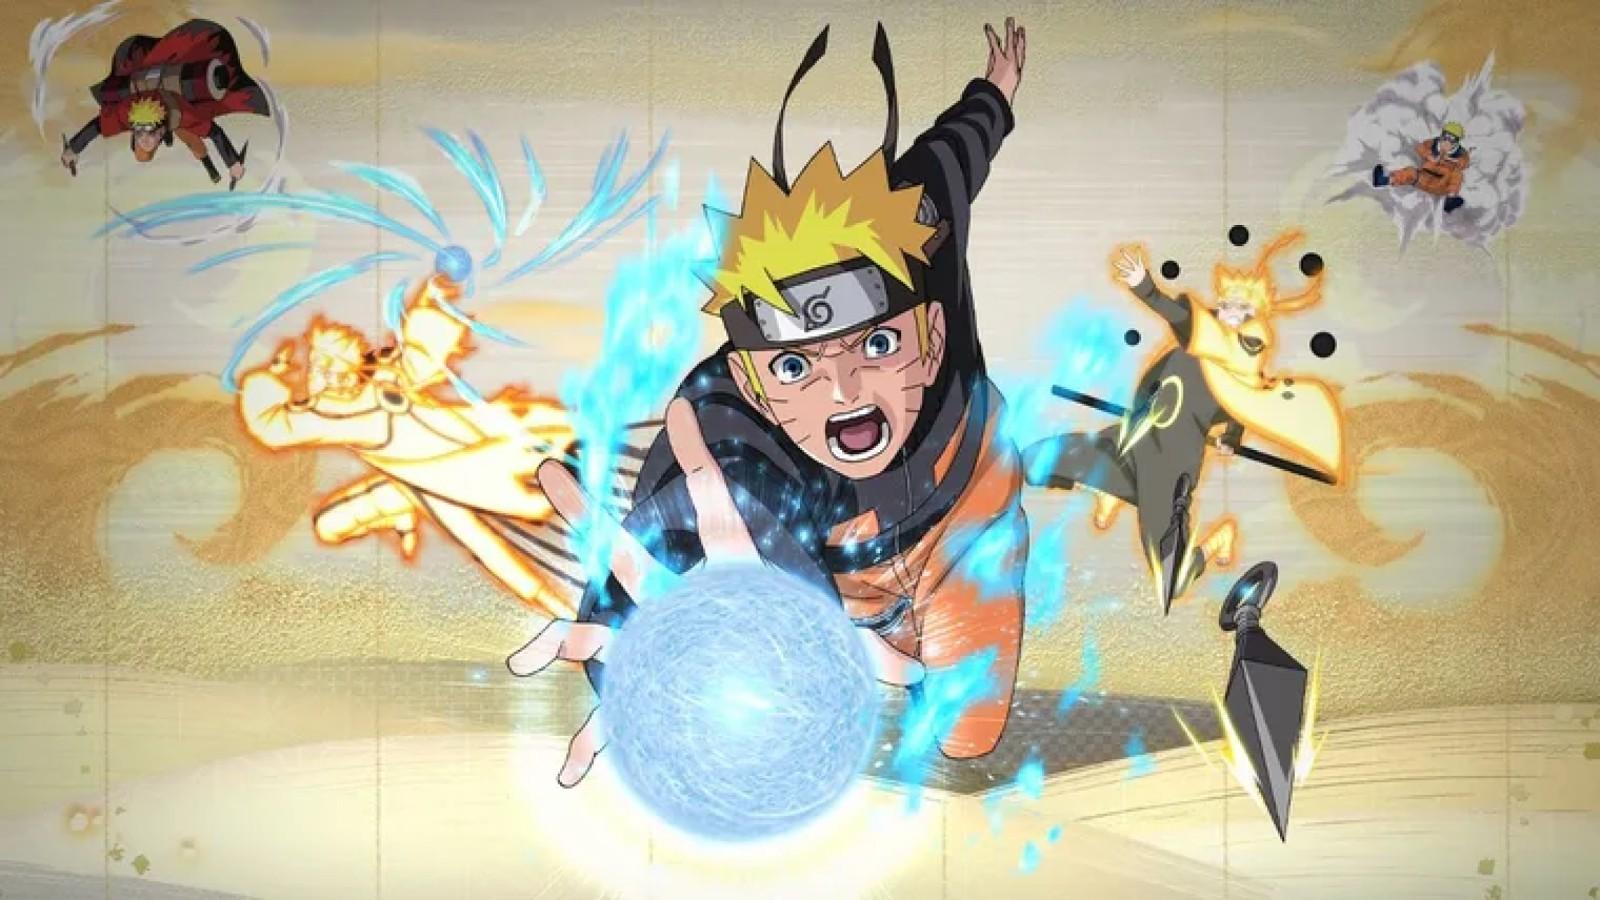 Naruto Shippuden: Season 17 The Shinobi Unite - Watch on Crunchyroll